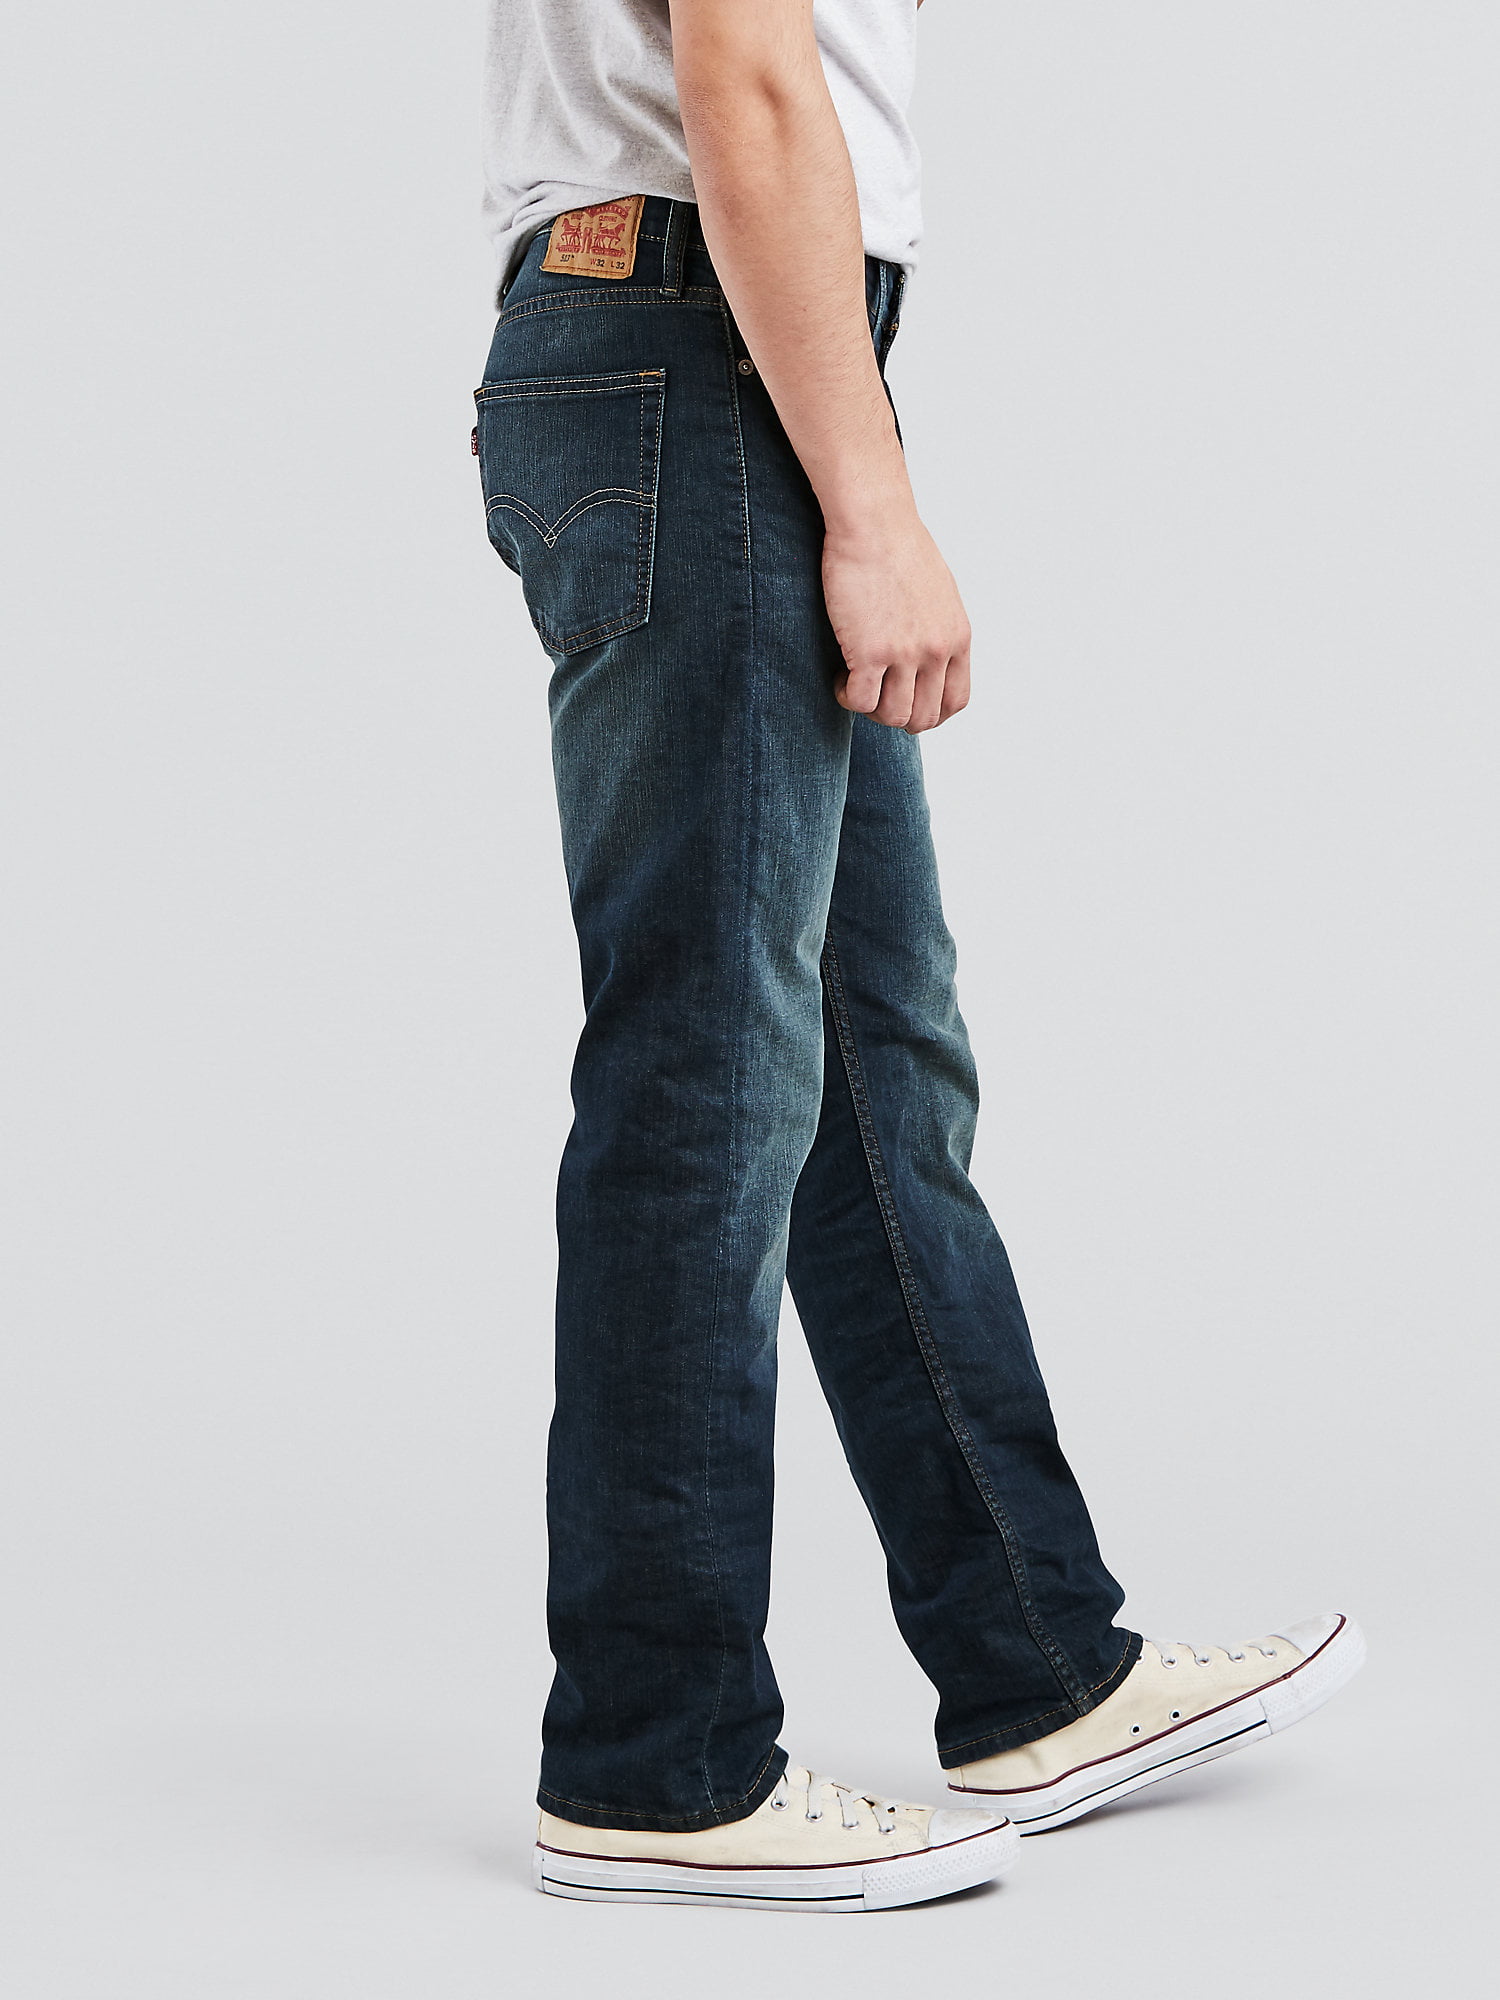 Levi 513 Mens Khaki Colored Jeans. Size... - Depop